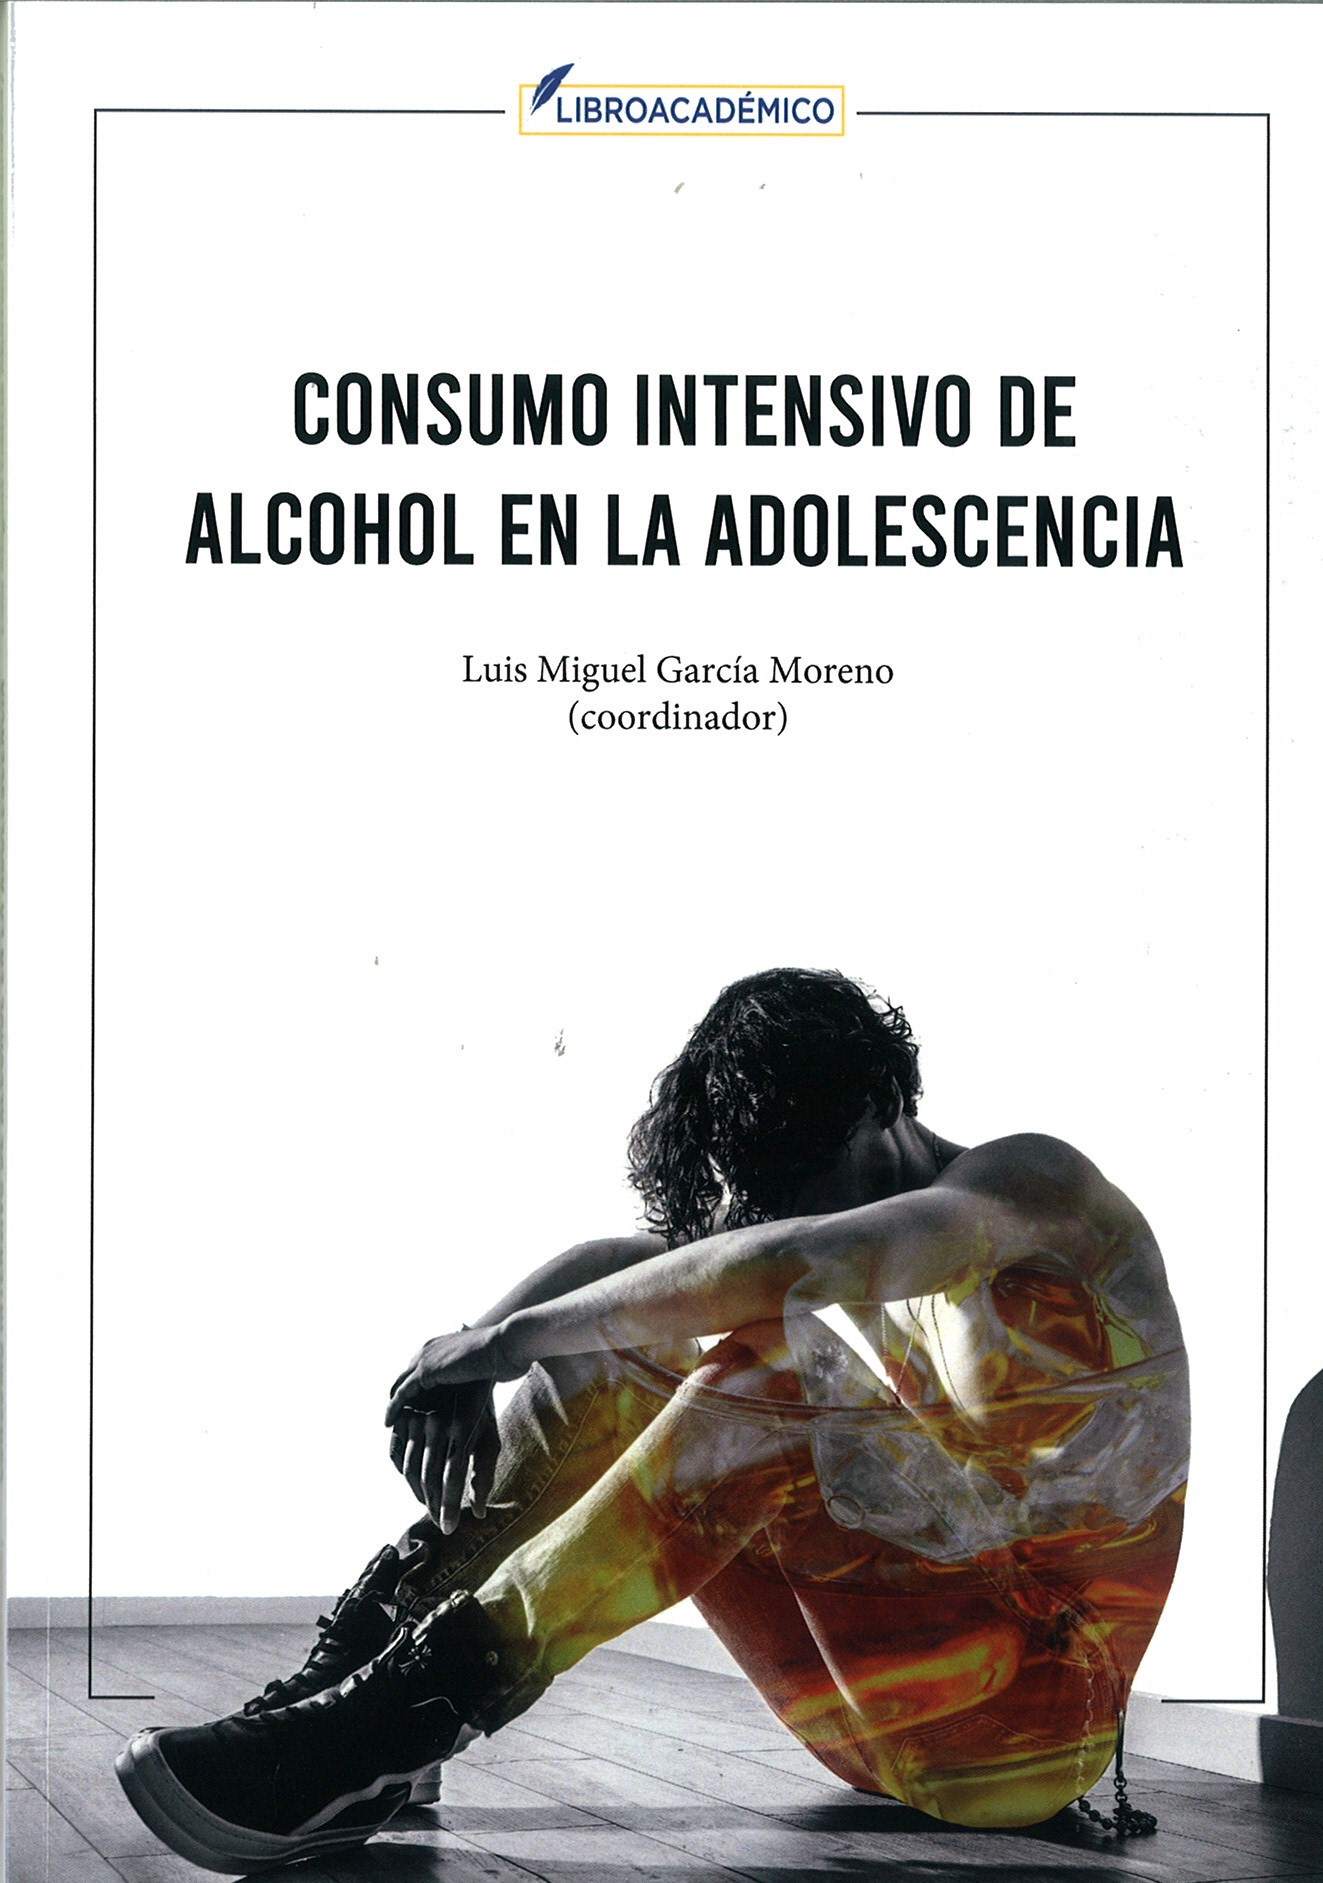 Imagen de portada del libro Consumo intensivo de alcohol en la adolescencia